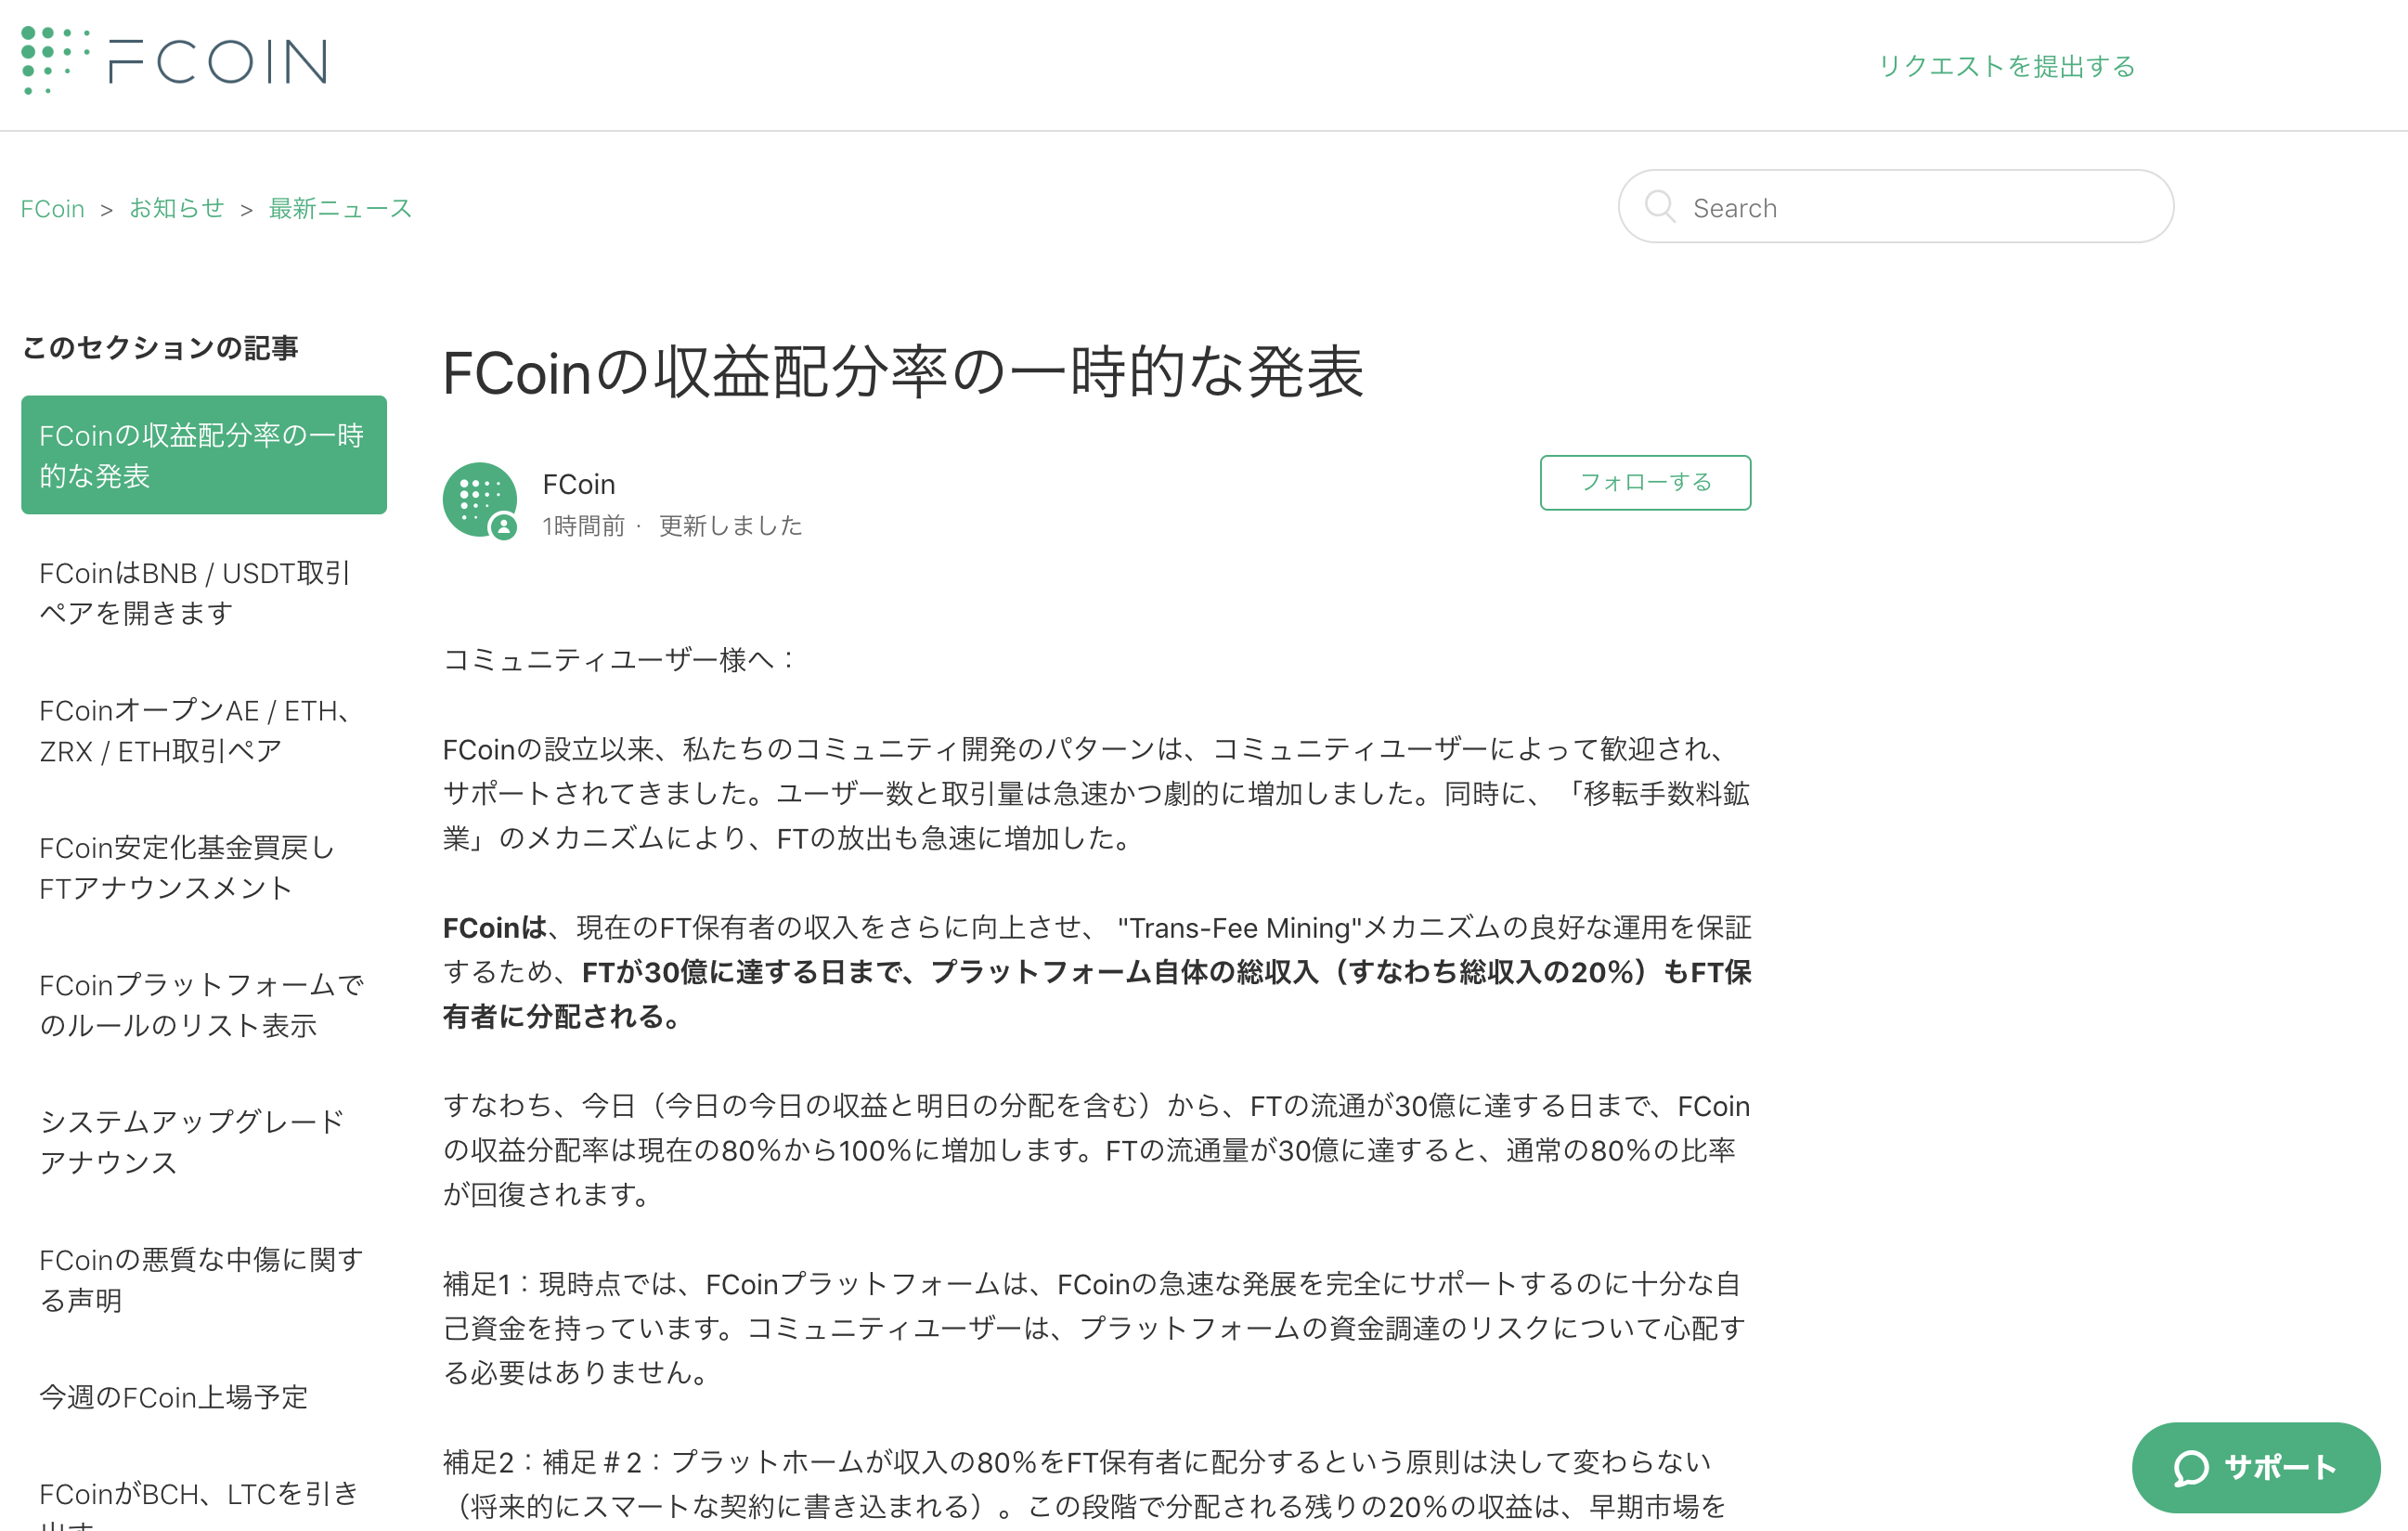 6月21日FCoin最新情報！FCoinの収益配分率の一時的な発表